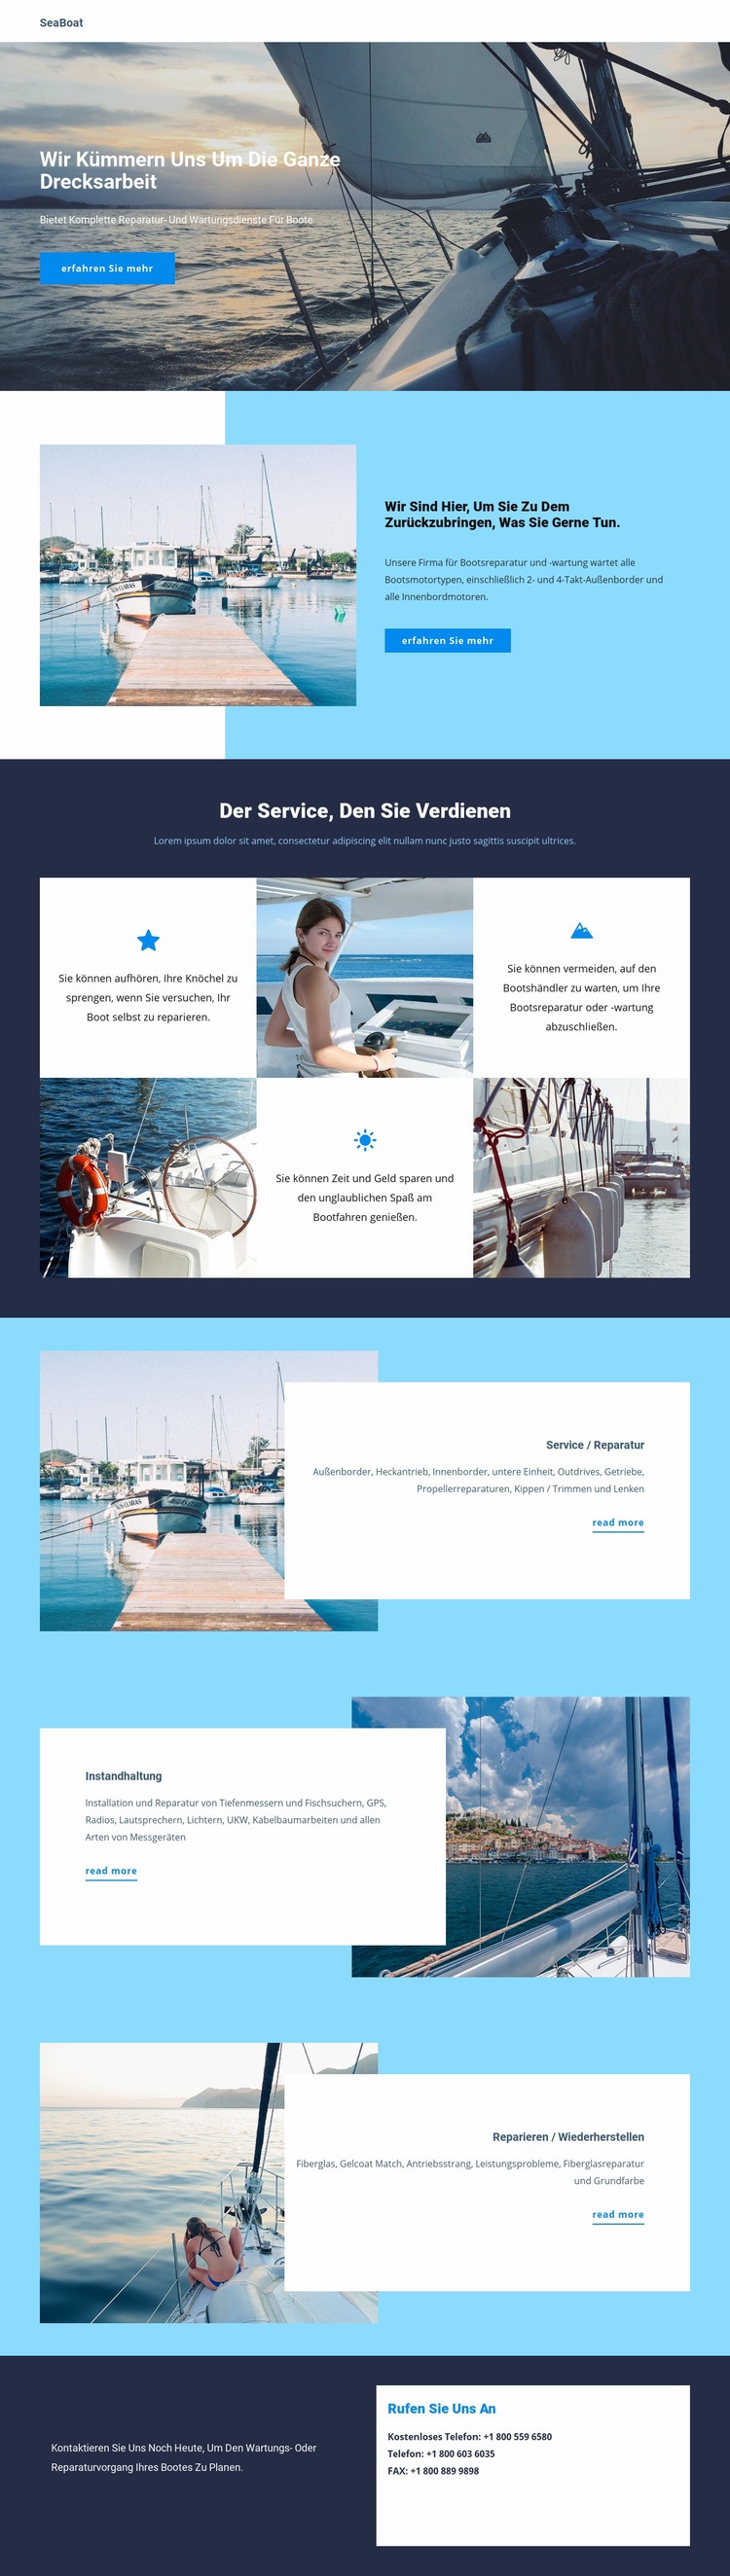 Reisen Sie mit dem Seeboot Website design